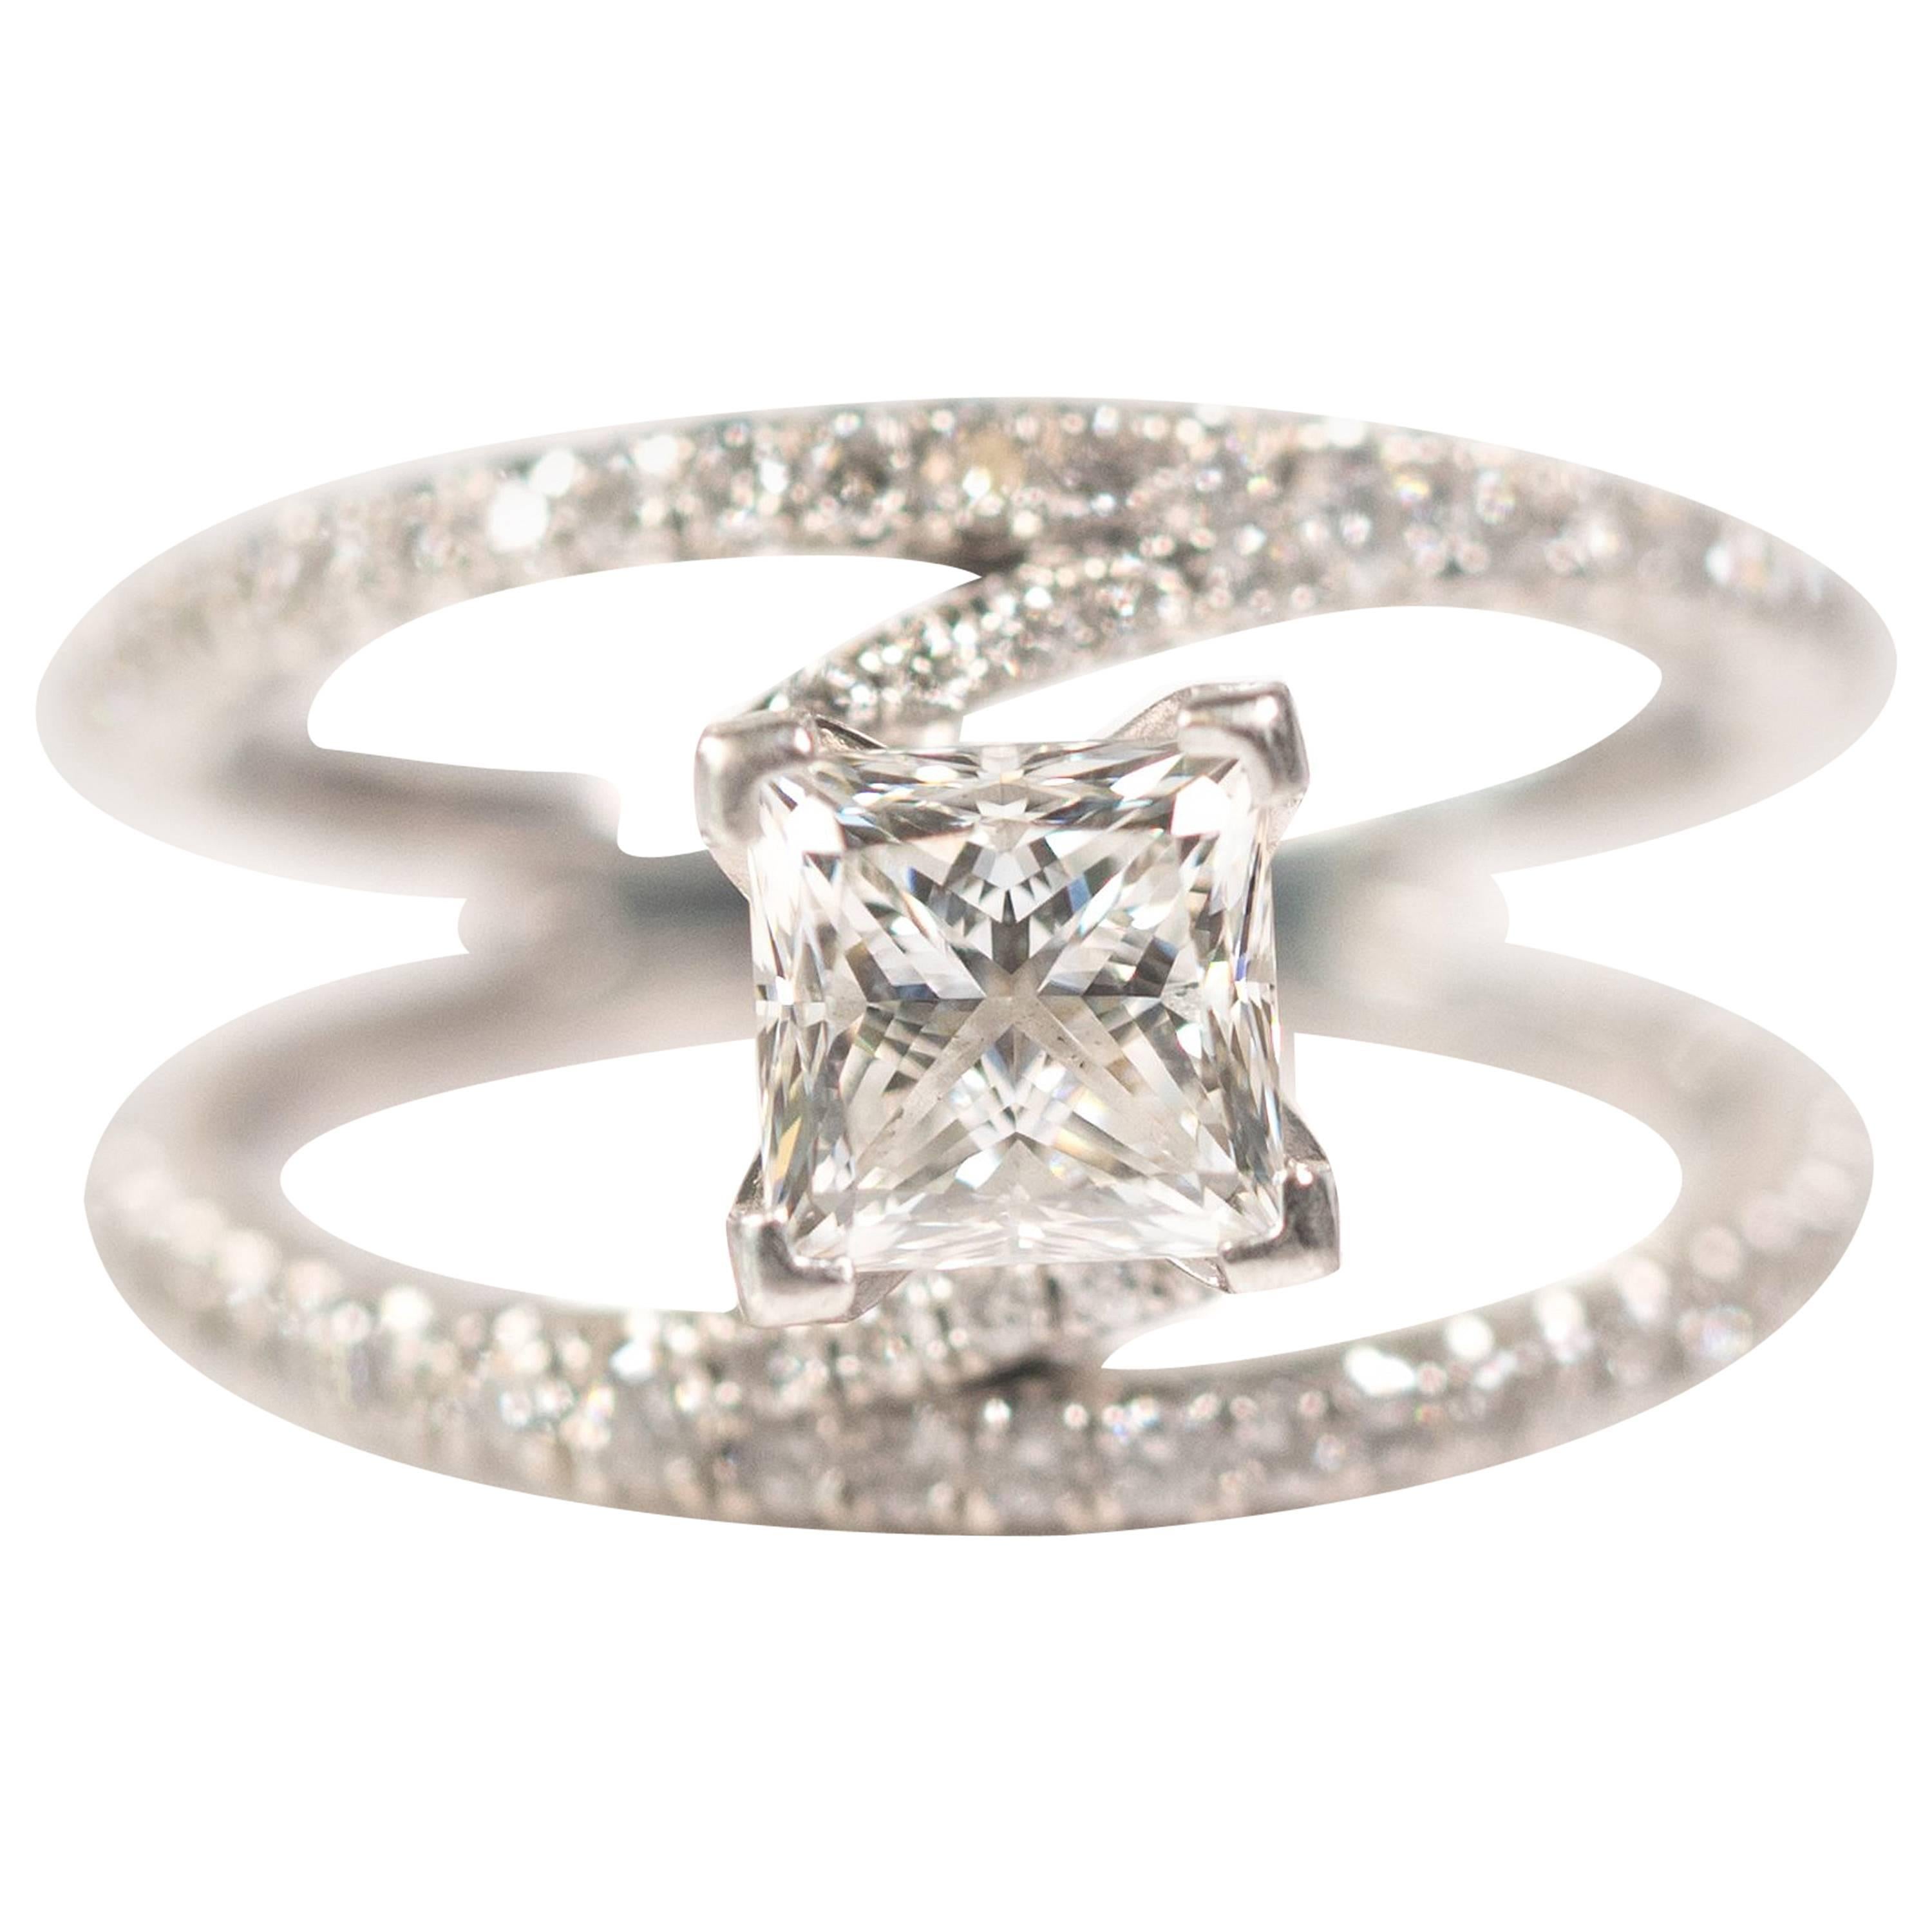 1.20 Carat Princess Cut Diamond Split-Shank Engagement Ring 14 Karat White Gold